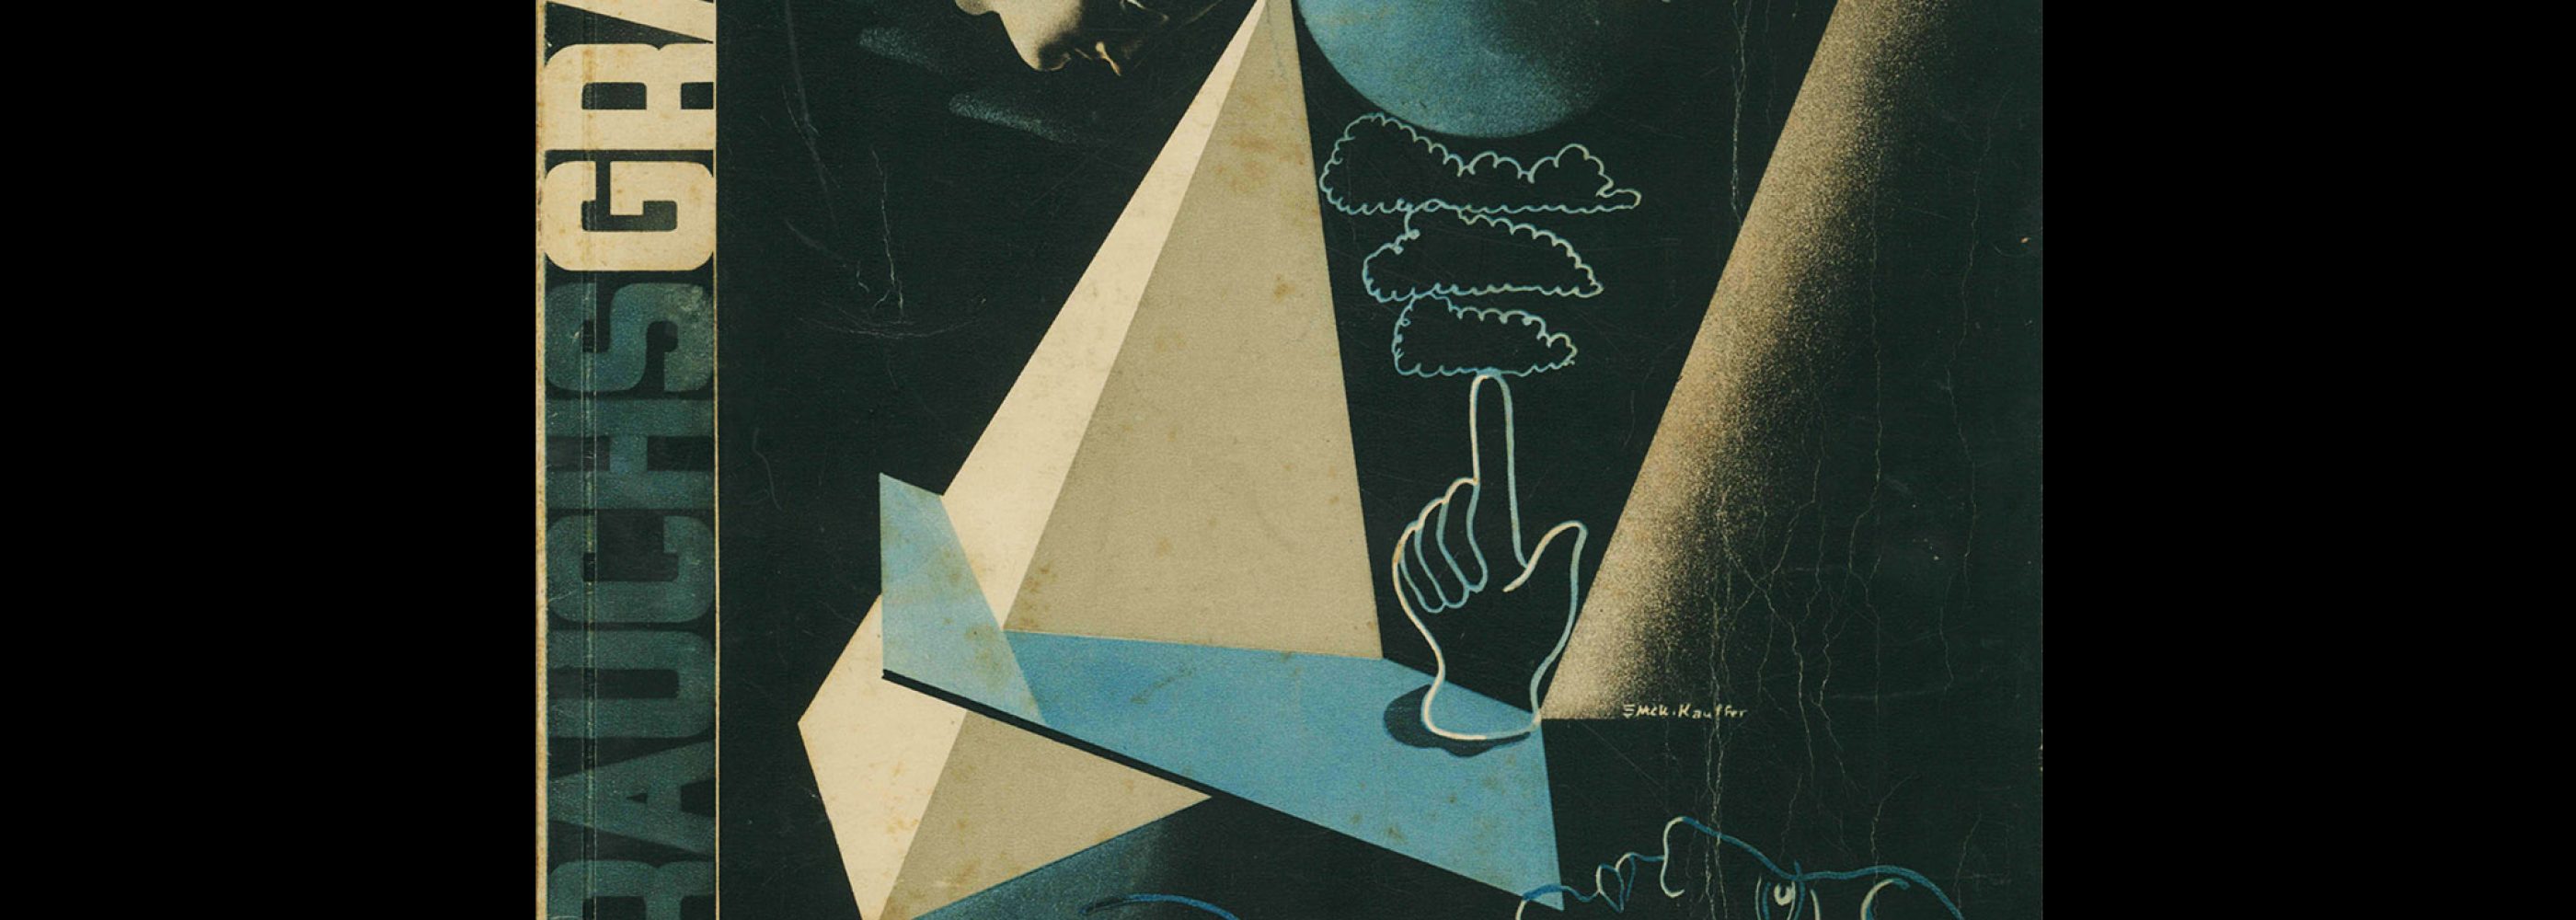 Gebrauchsgraphik, 10, 1933. Cover design by Edward McKnight Kauffer